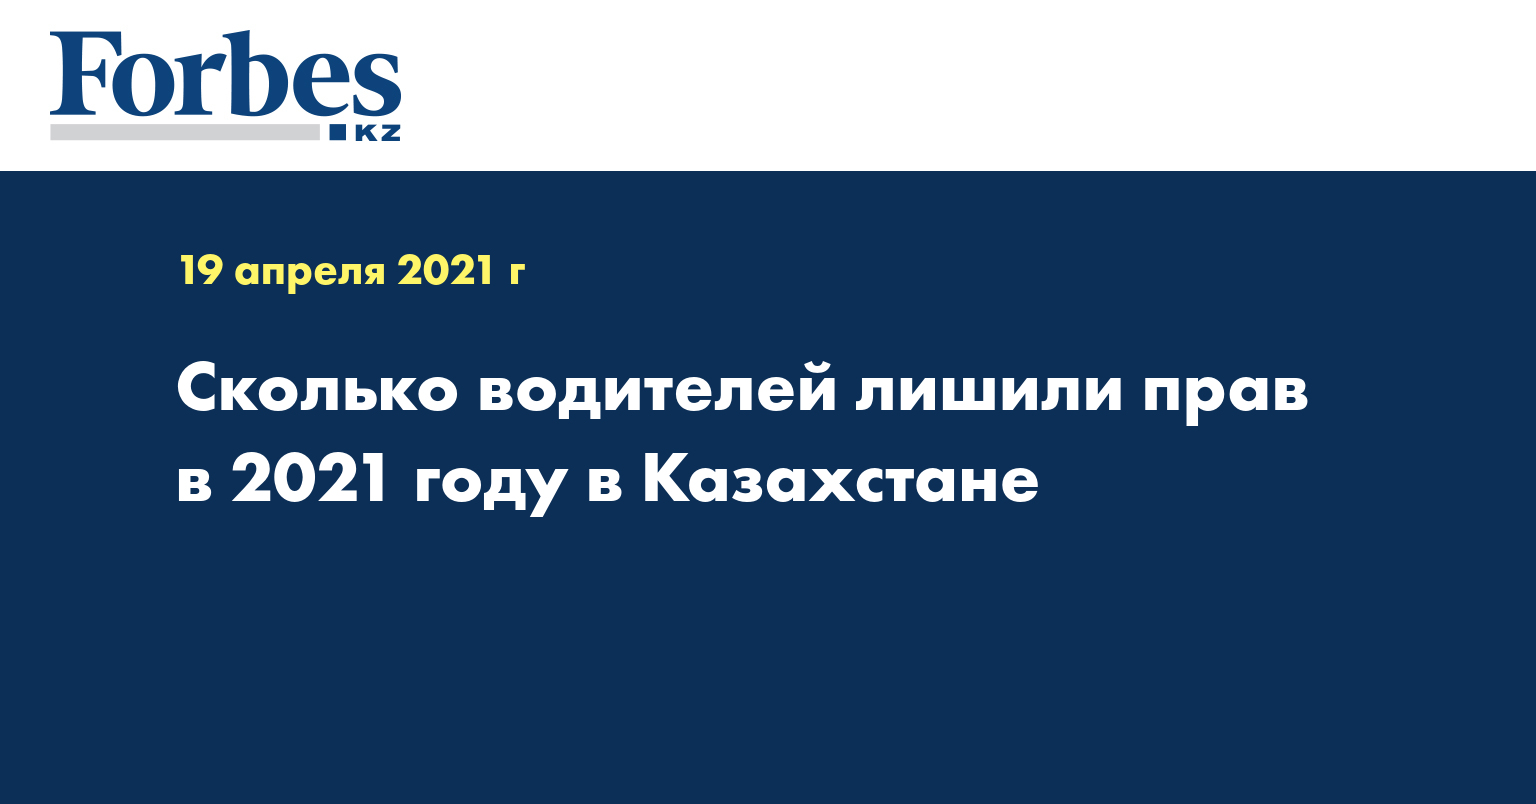 Сколько водителей лишили прав в 2021 году в Казахстане